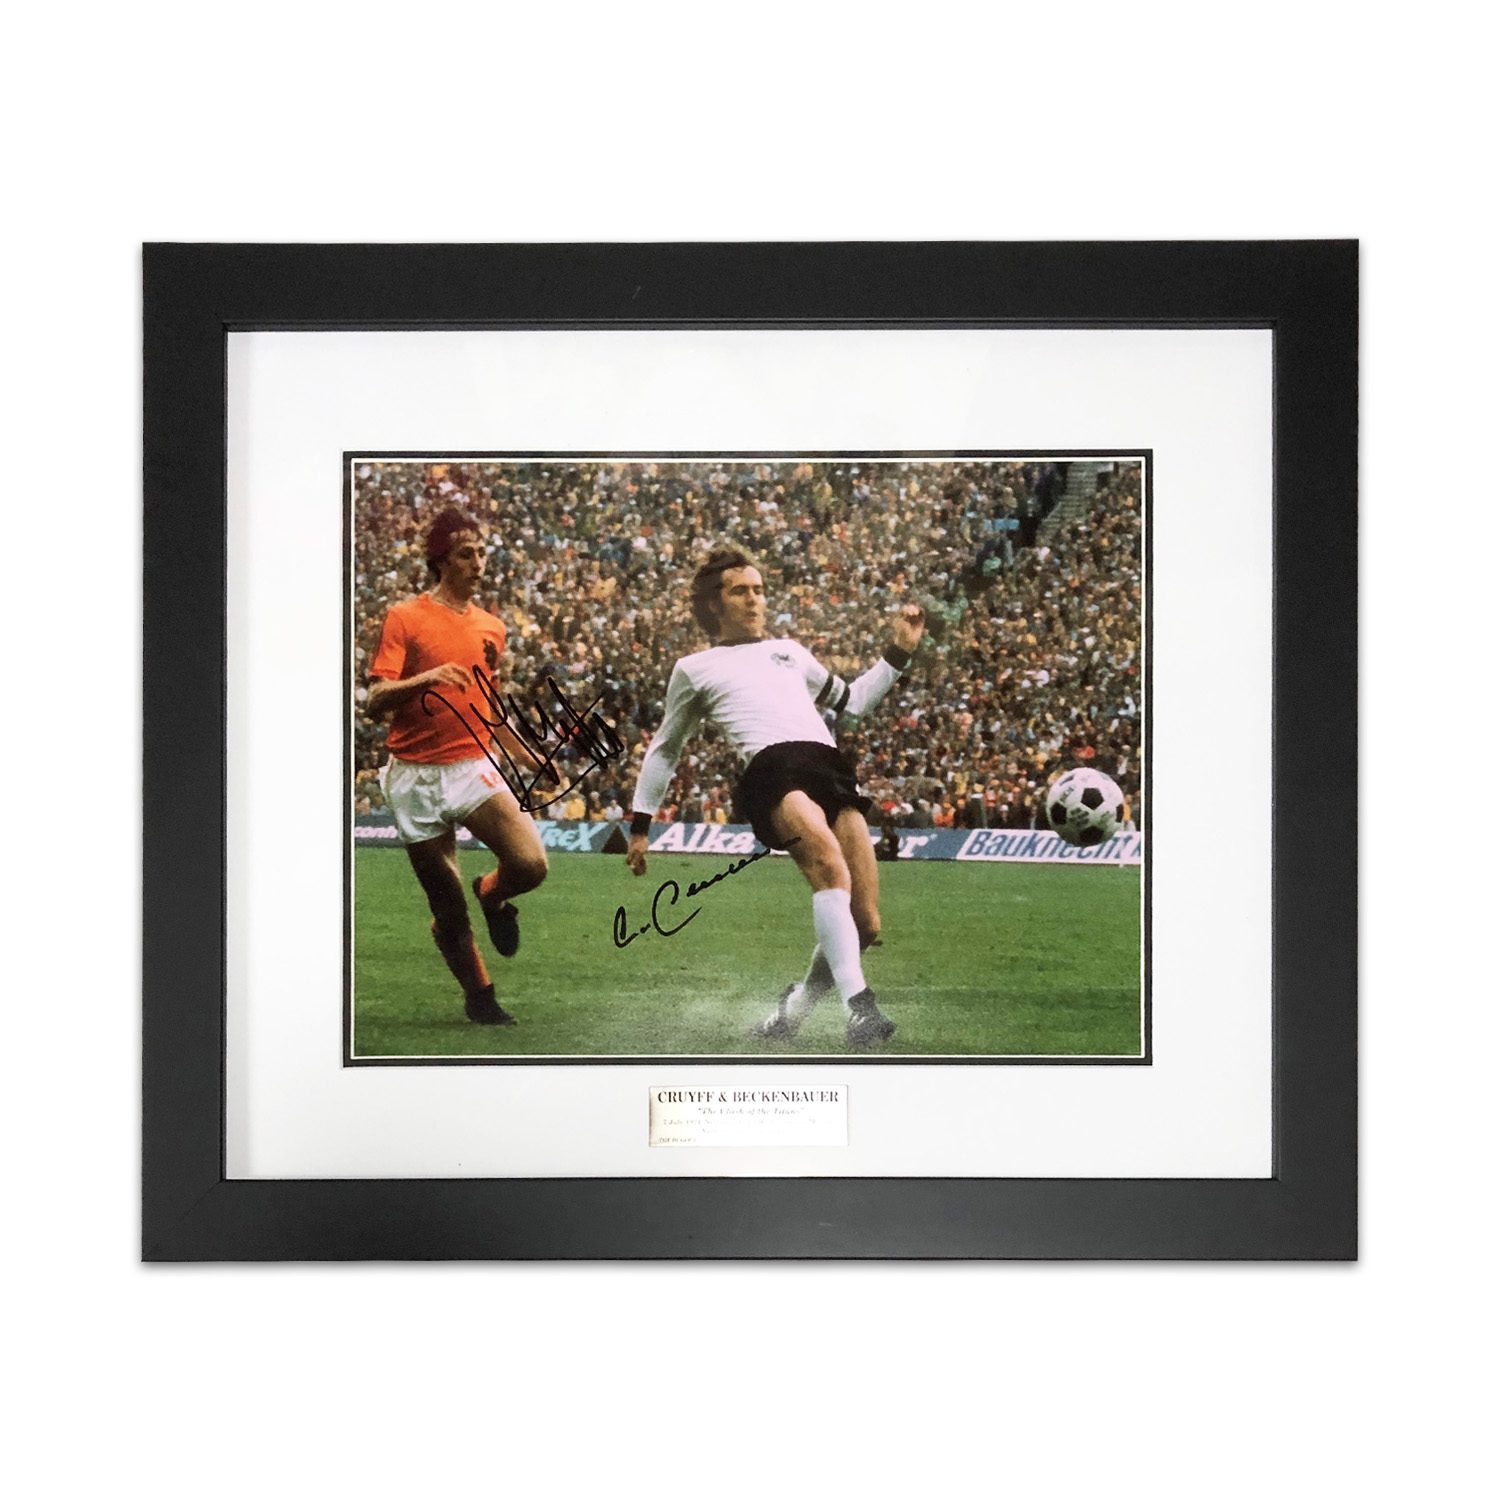 クライフ＆ベッケンバウアー直筆サイン入り1974フォト特製フレーム / Johan Cruyff & Franz Beckenbauer  autographed 1974 photo (framed)